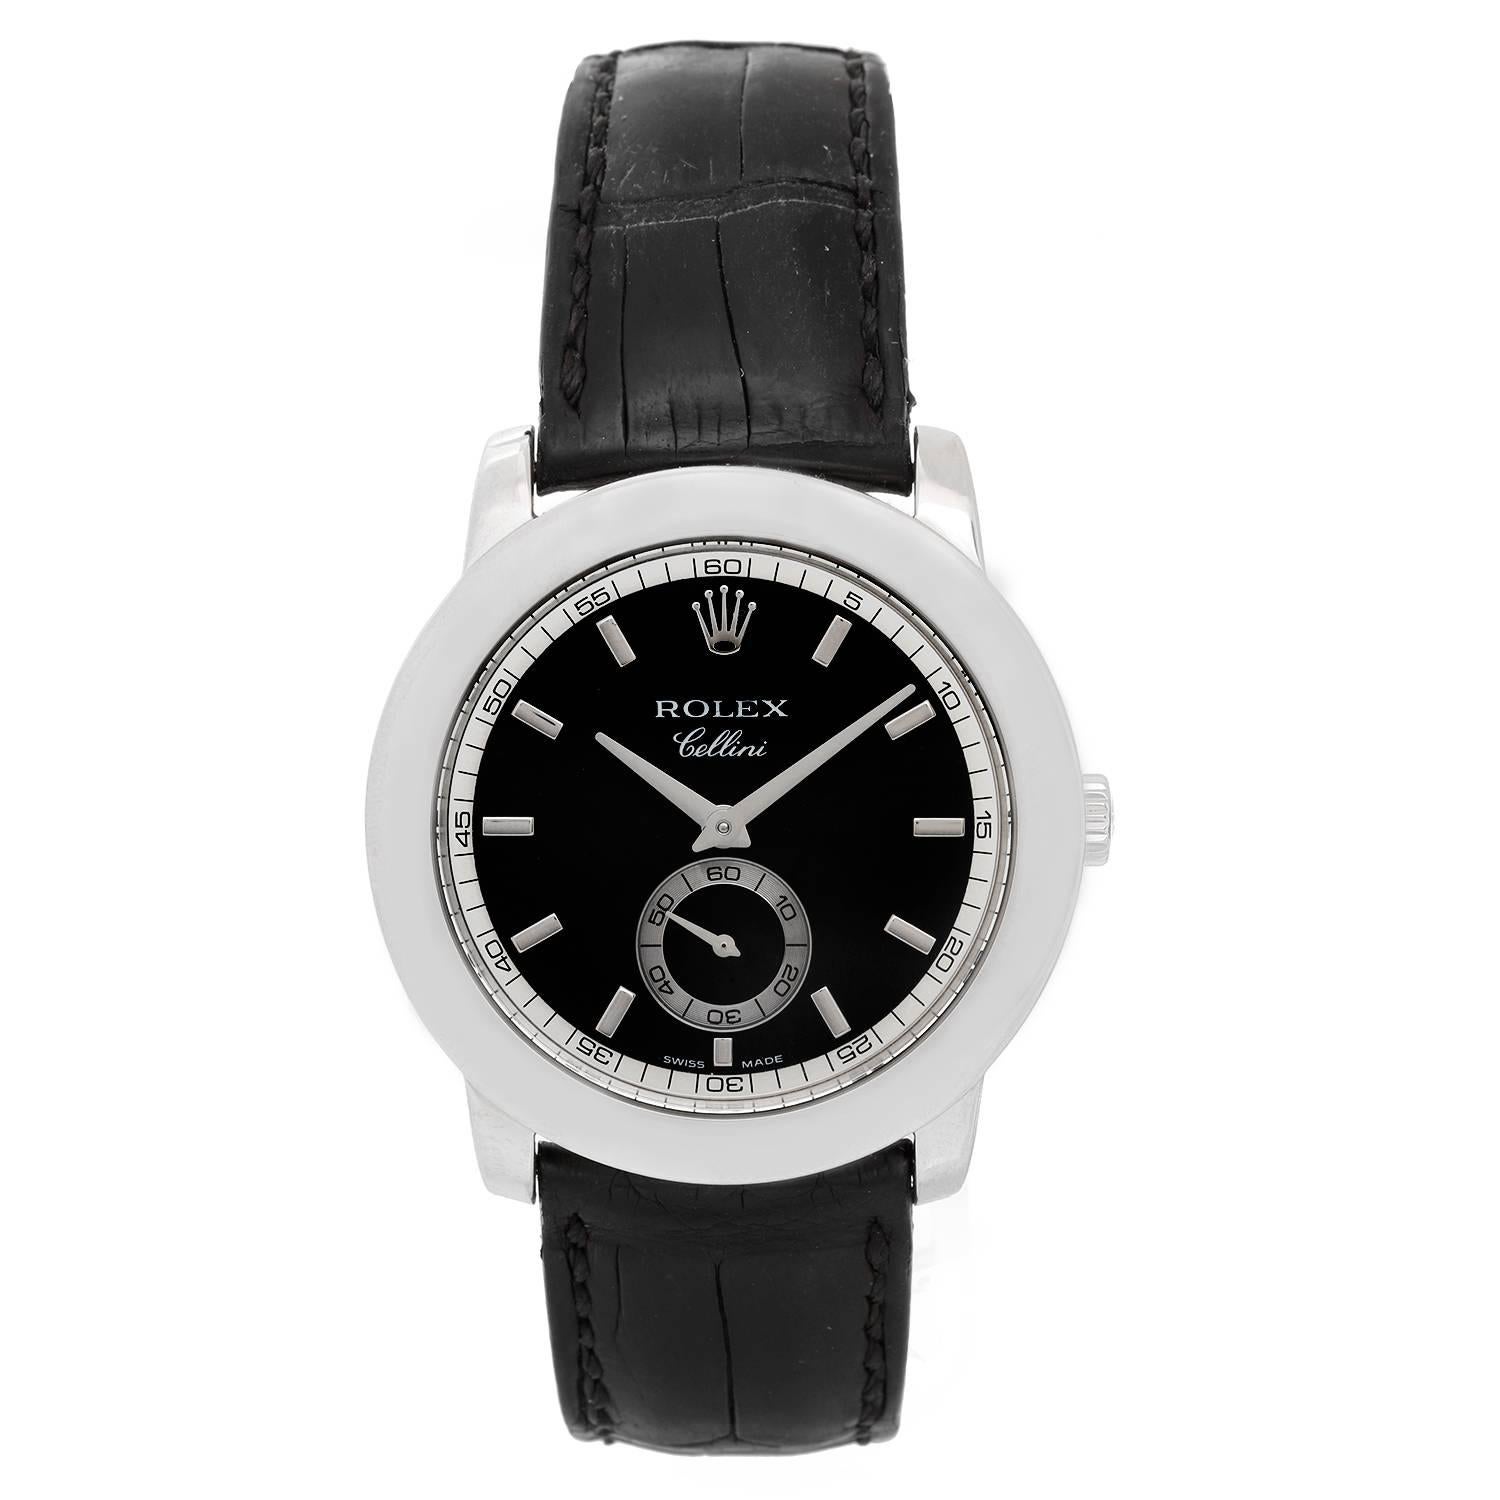 Rolex Platinum Cellinium Cellini Black Dial Automatic Wristwatch